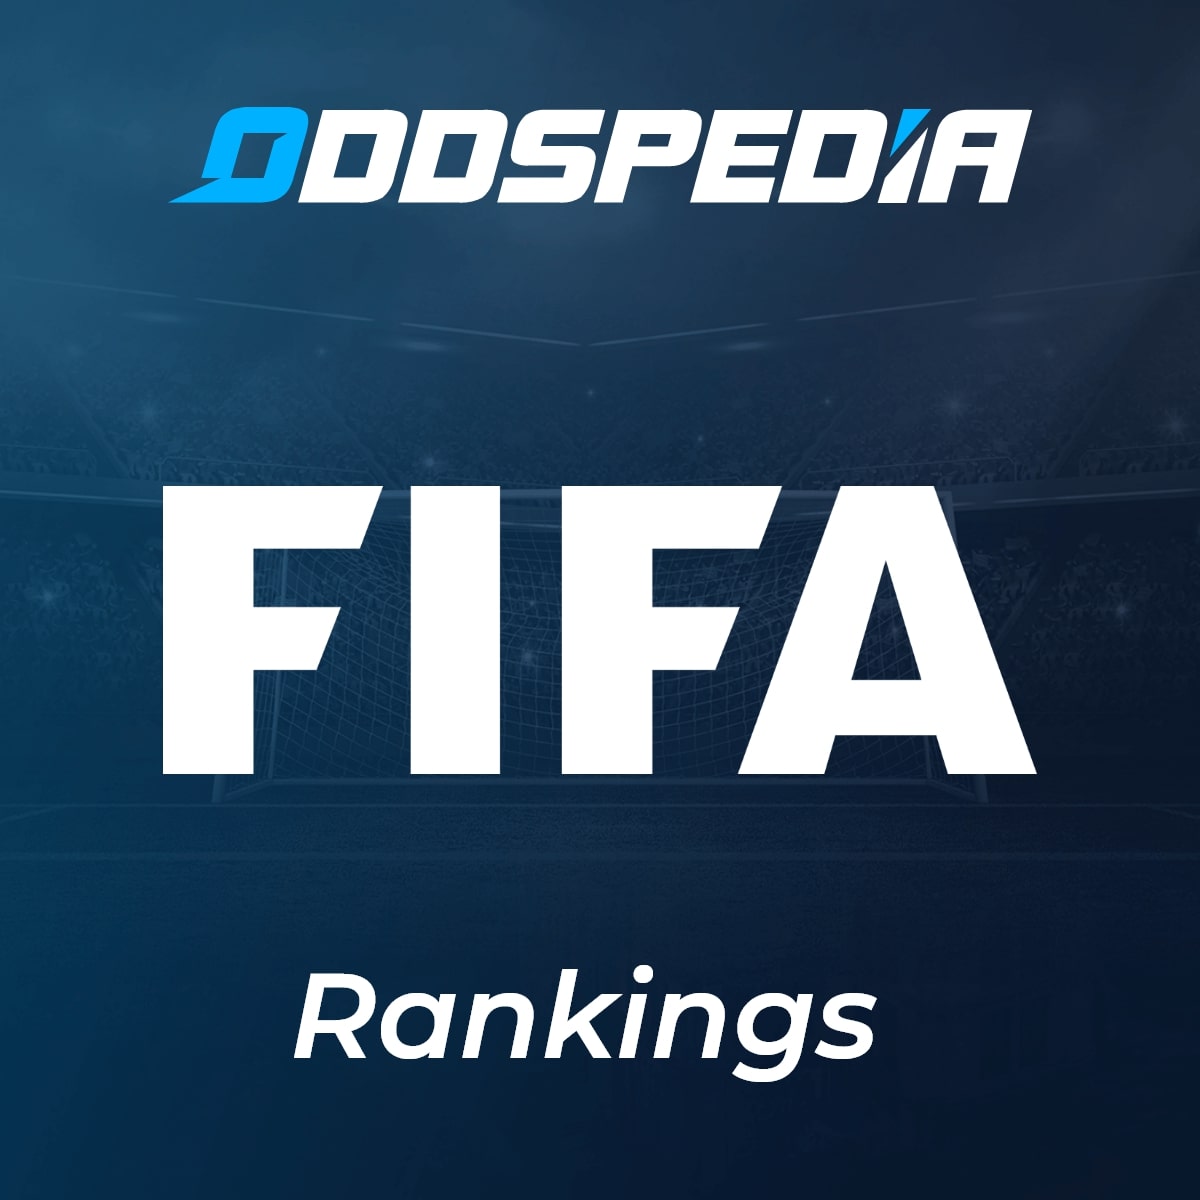 UPDATE 🔥 LATEST FIFA RANKINGS 2023 - FIFA World Ranking 2023